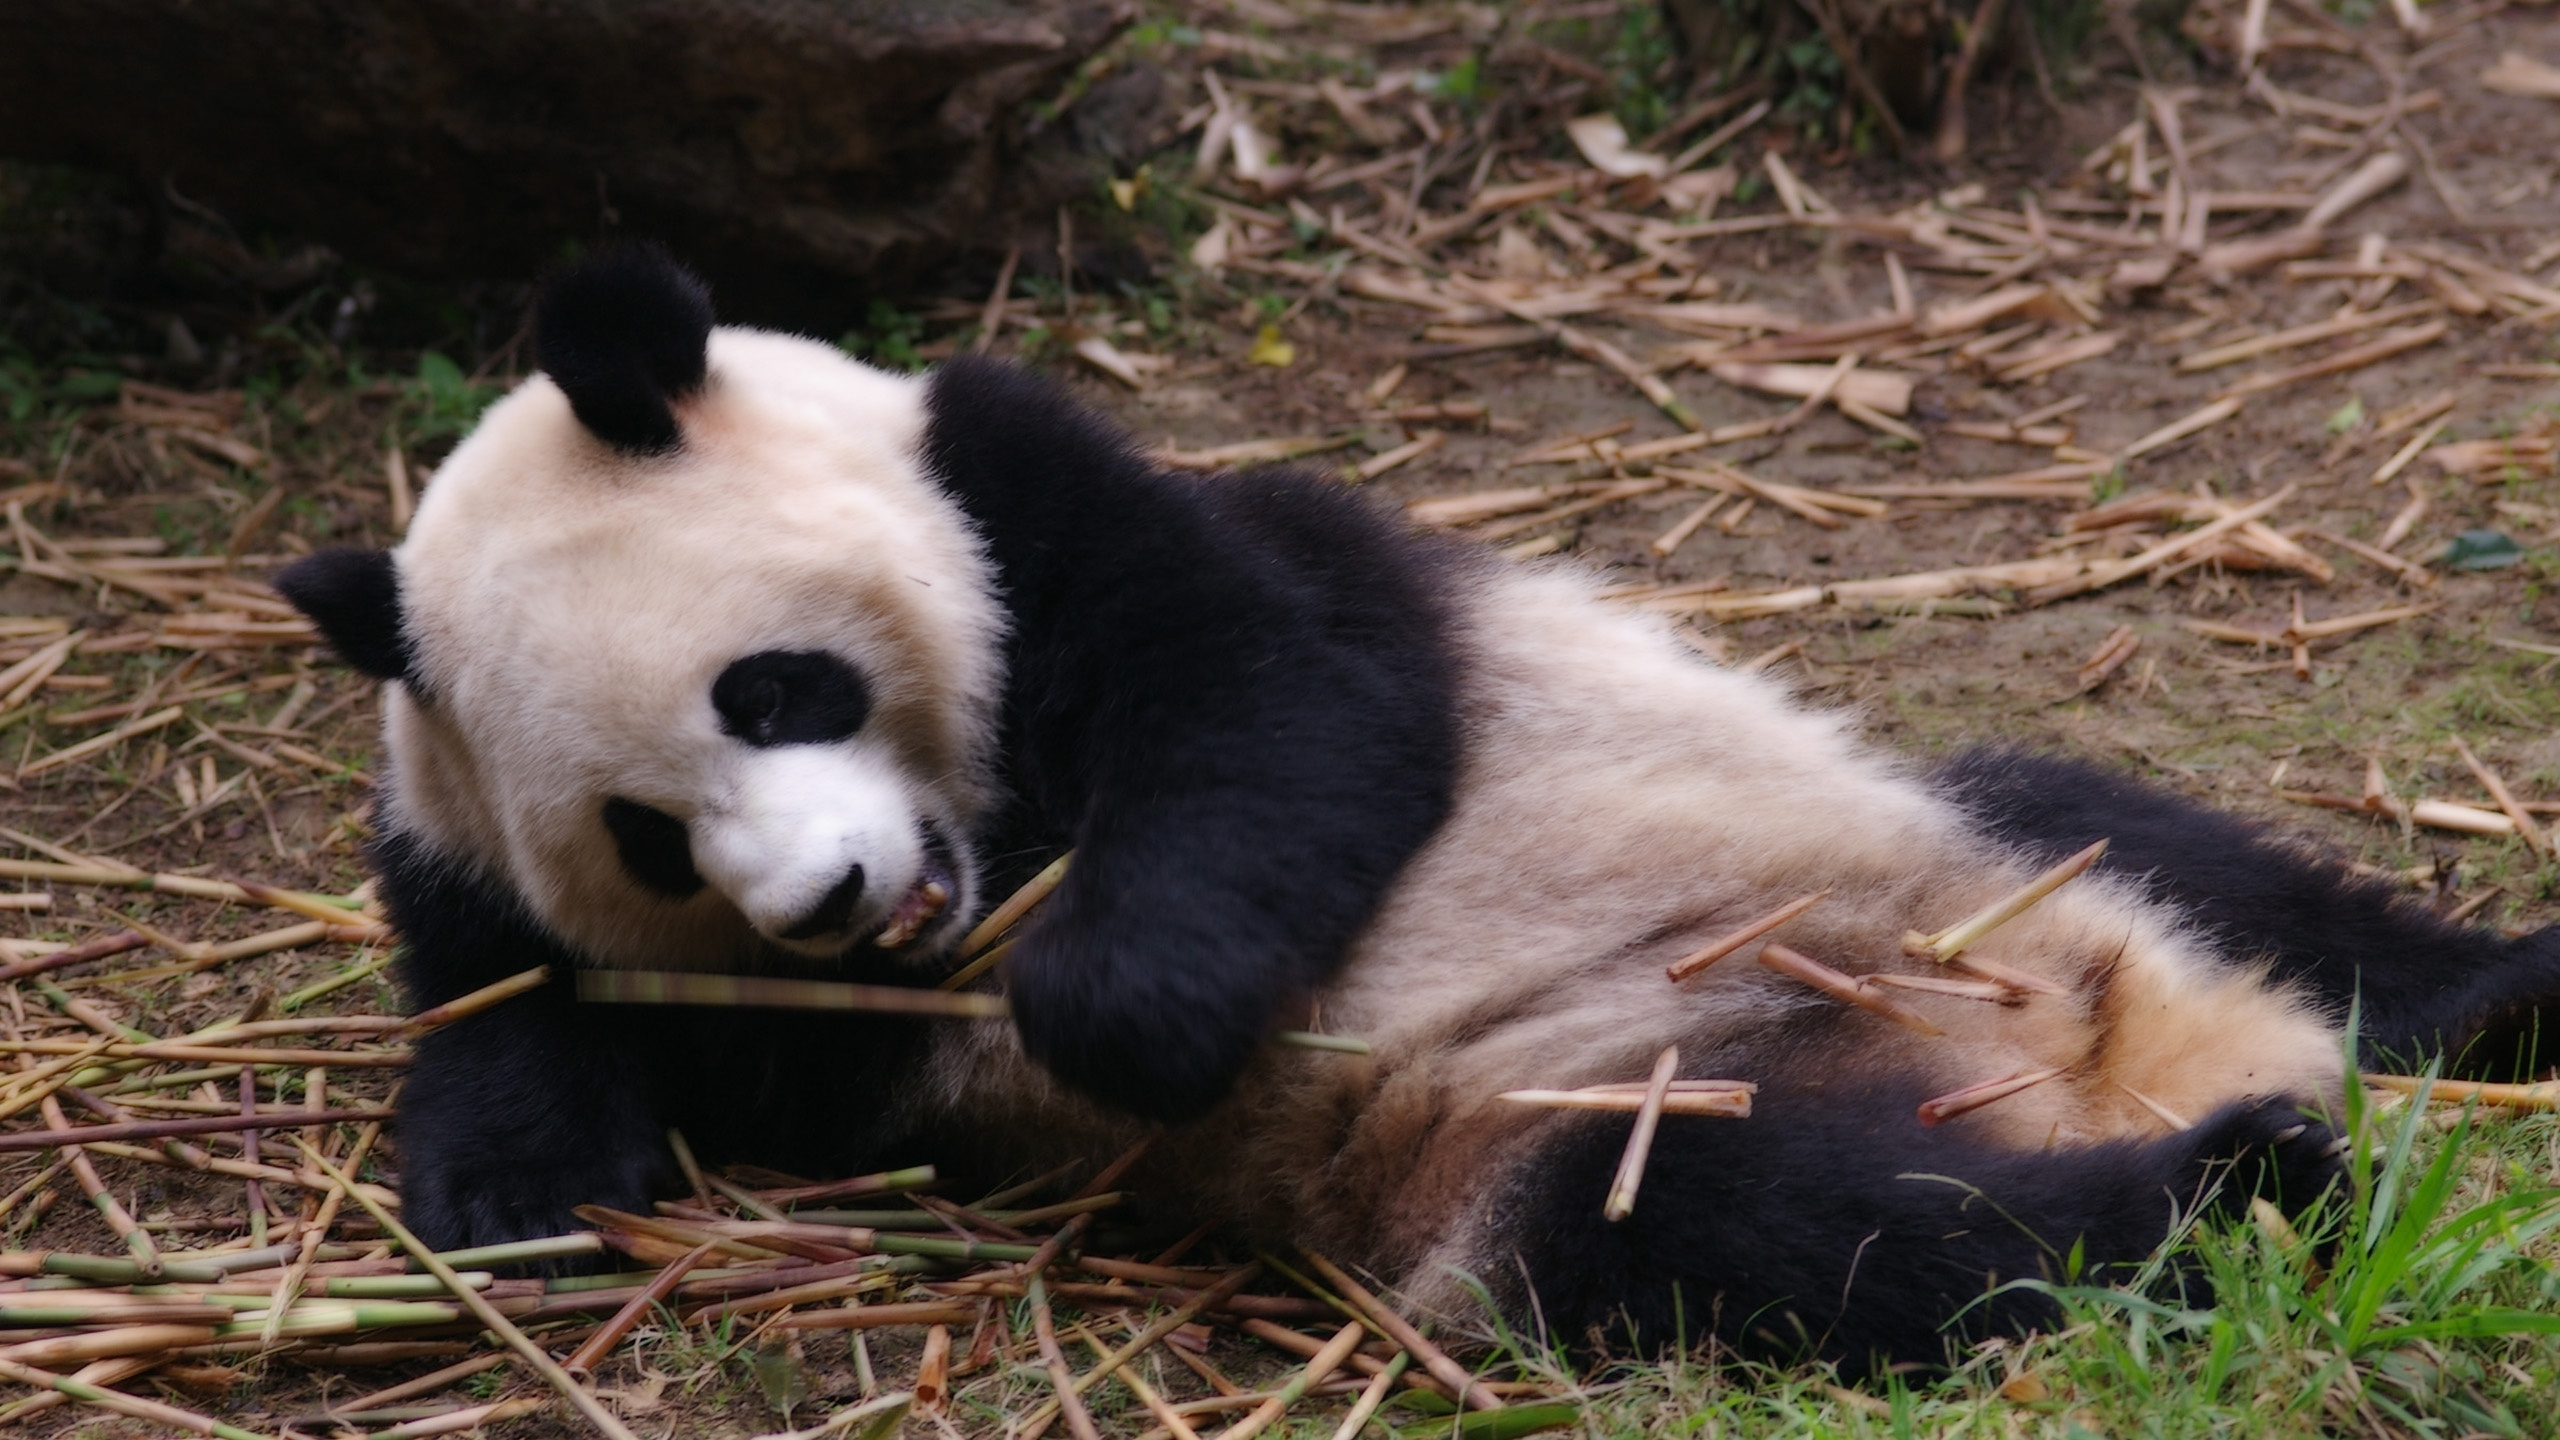 大熊猫, 小熊猫, 陆地动物, 熊, 野生动物 壁纸 2560x1440 允许